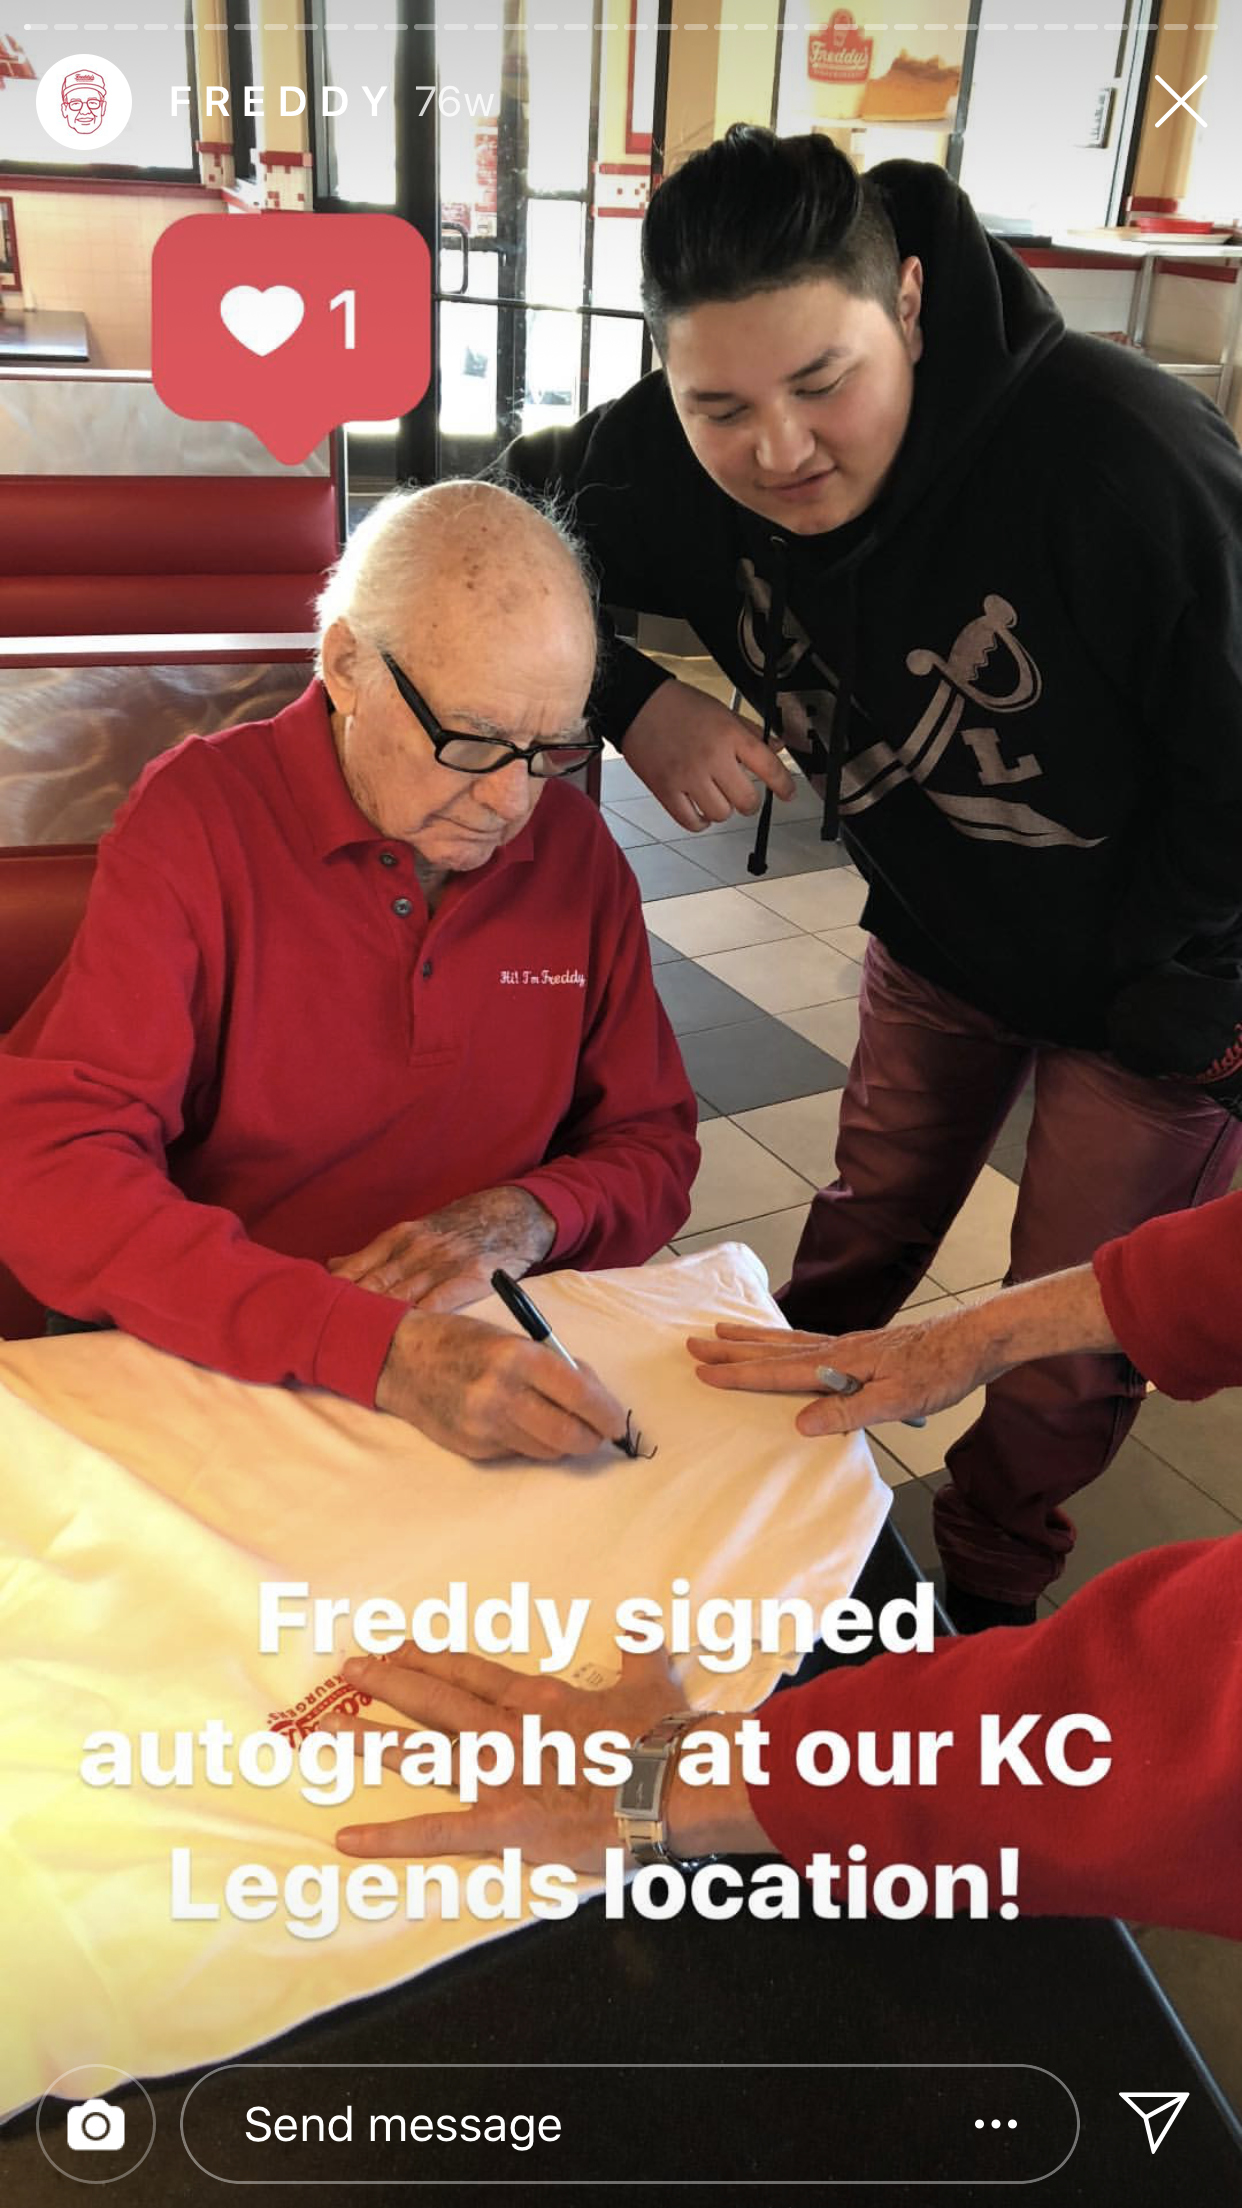 Freddy's en Instagram - Las mejores marcas para seguir